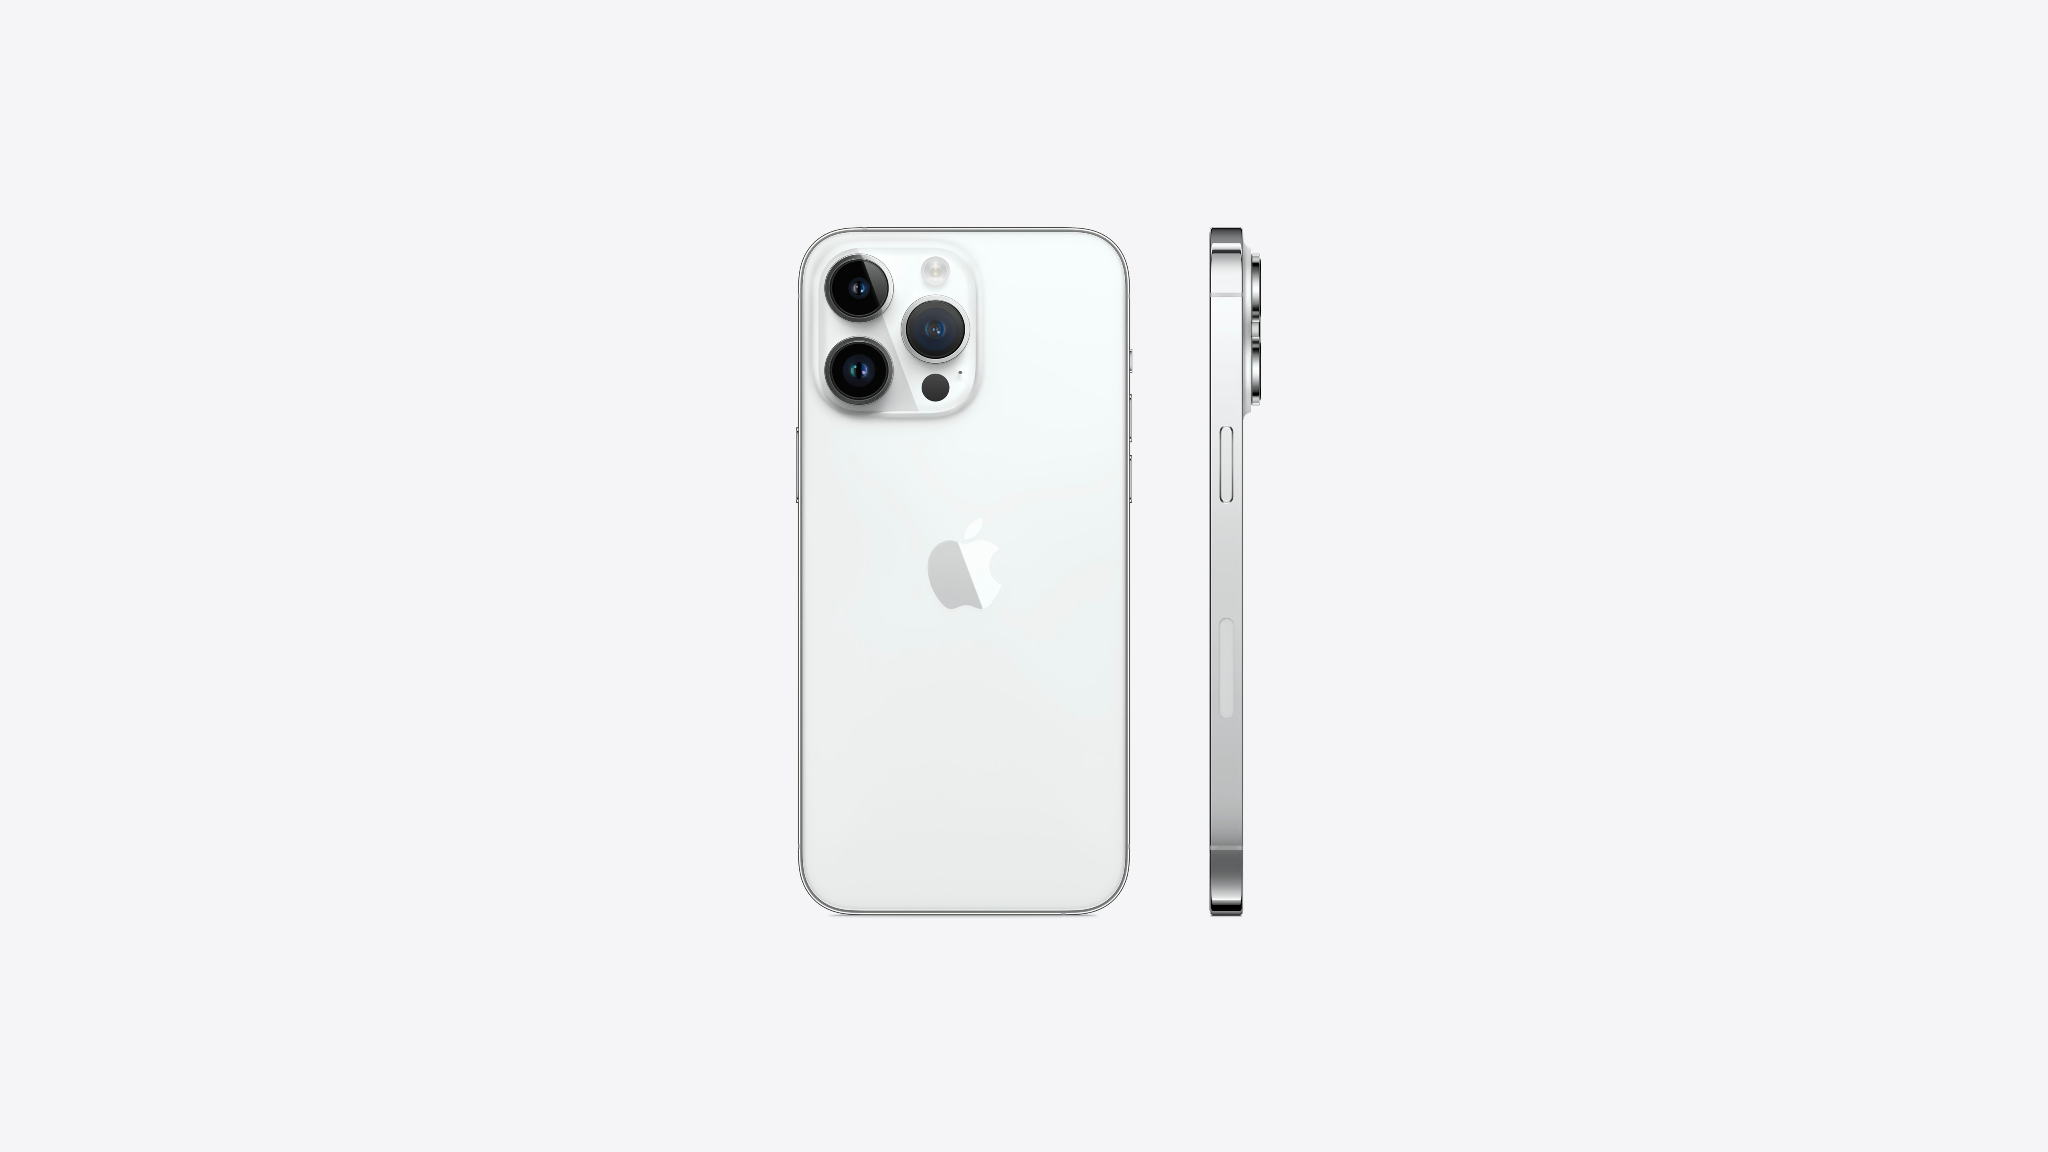 Vẫn sở hữu vẻ đẹp mang hơi hướng lạnh lùng, tông bạc trên iPhone 14 Pro Max Silver không khác biệt so với iPhone 13 Pro Max trước đó